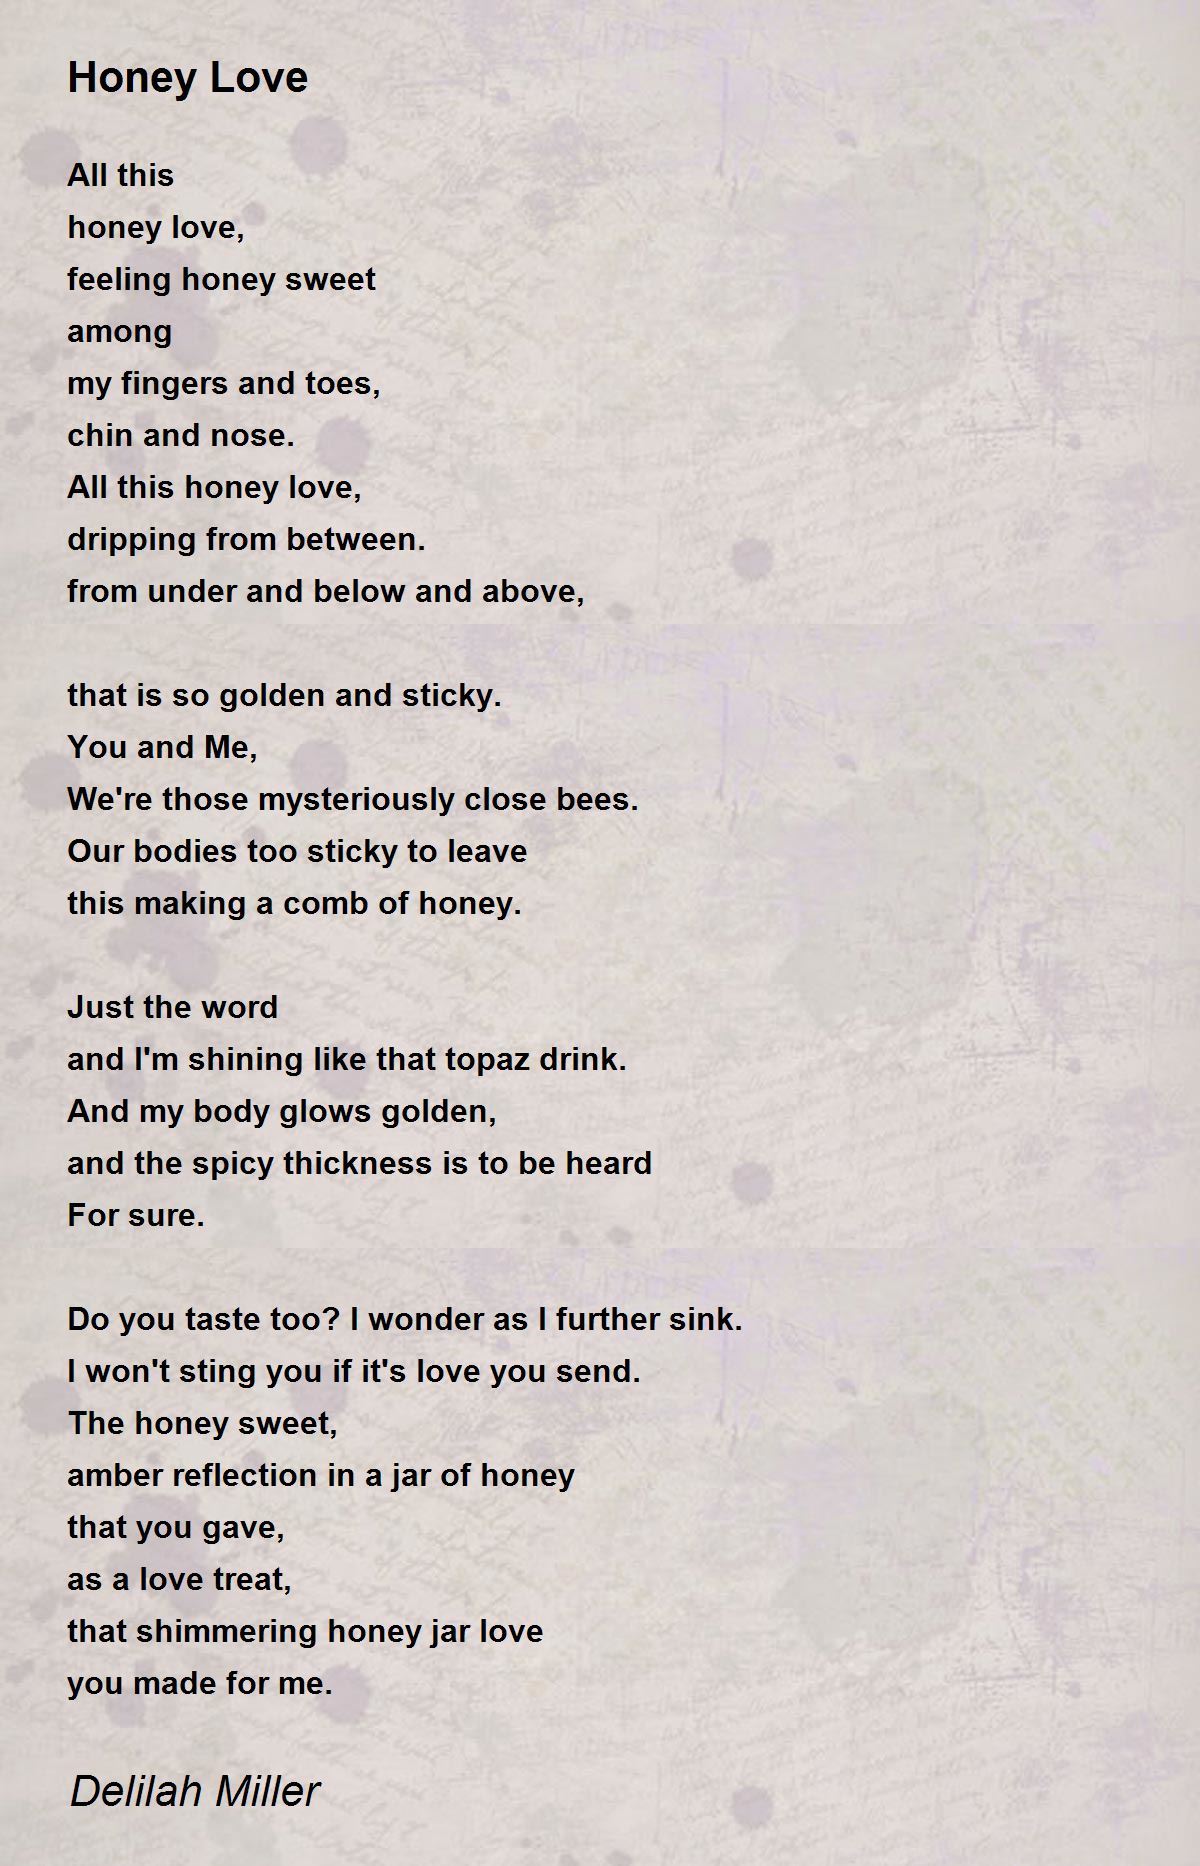 https://img.poemhunter.com/i/poem_images/521/honey-love-3.jpg